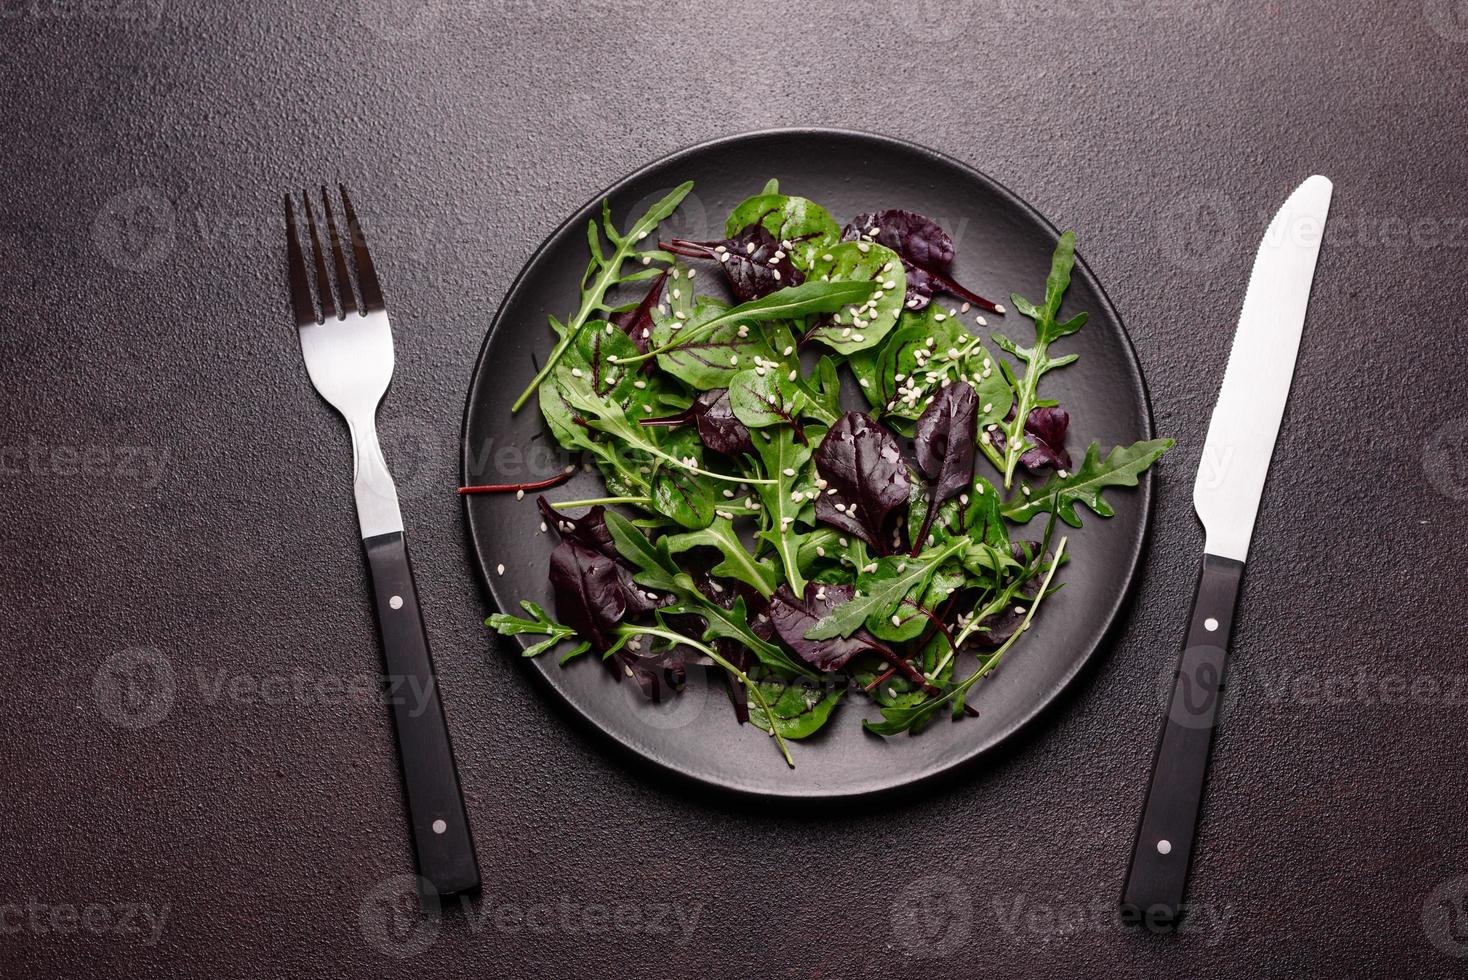 comida saudável, mistura de salada com rúcula, espinafre, sangue de boi foto